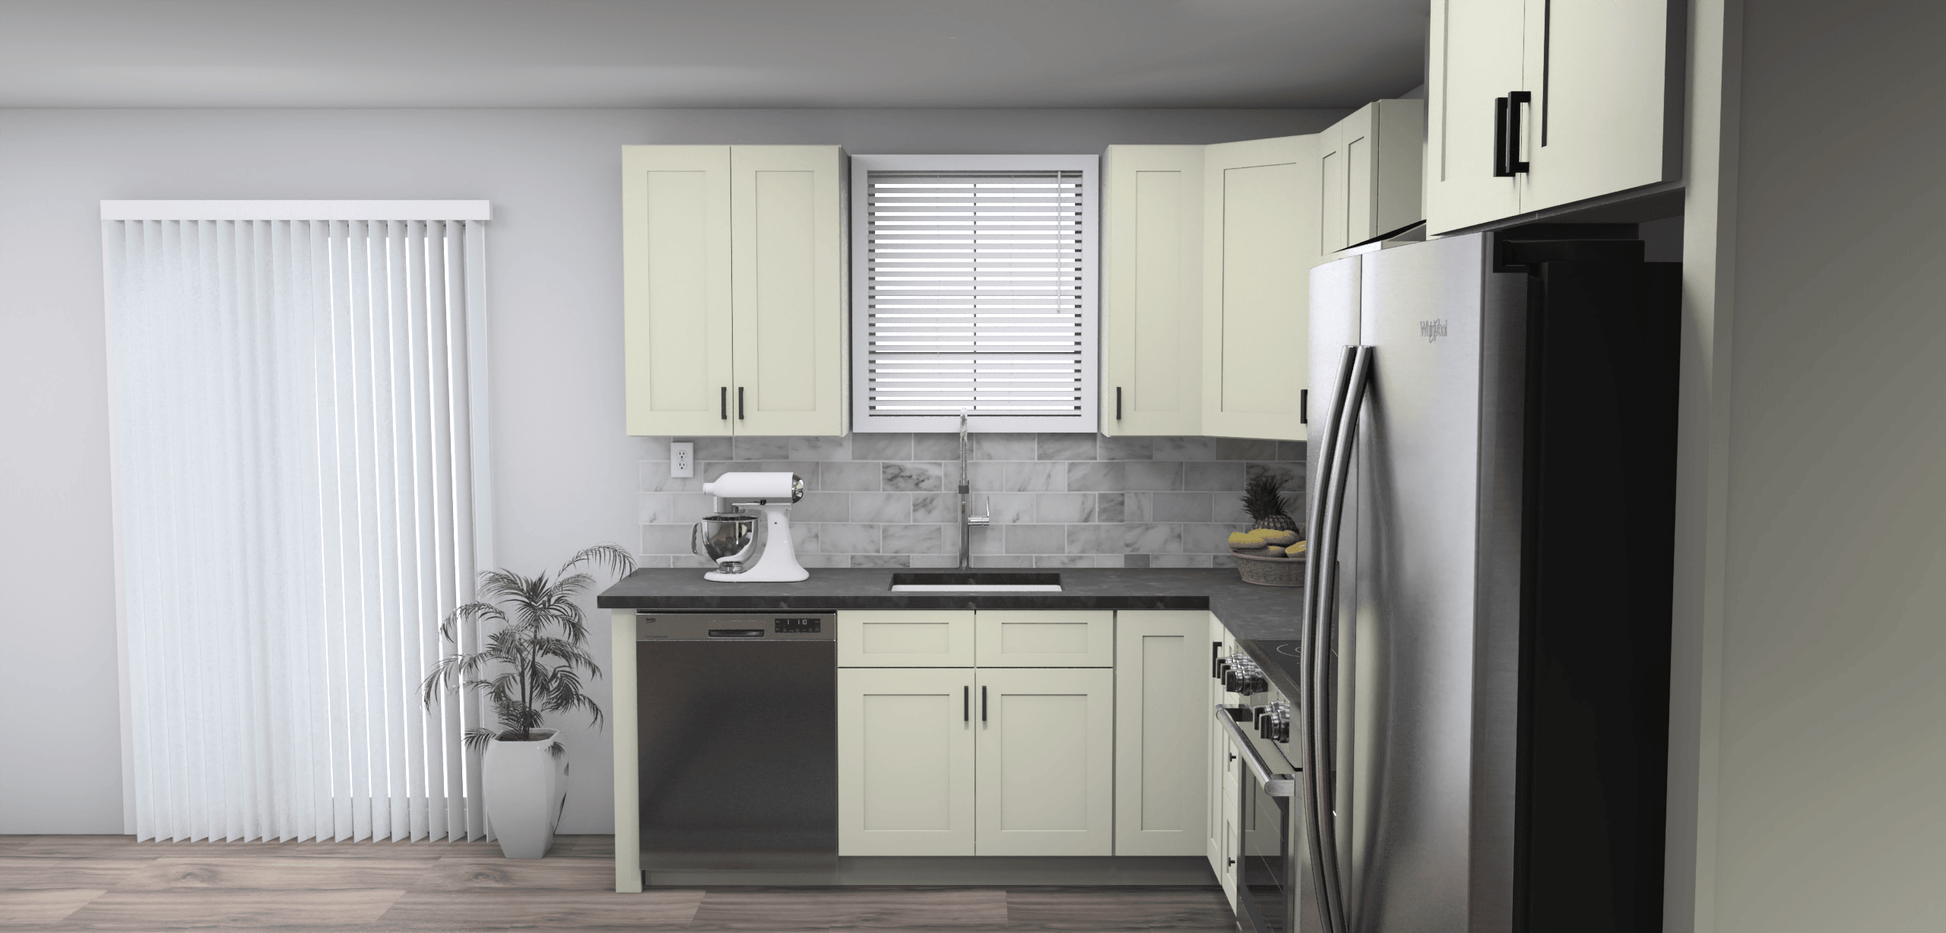 Fabuwood Allure Galaxy Linen 8 x 13 L Shaped Kitchen Side Layout Photo